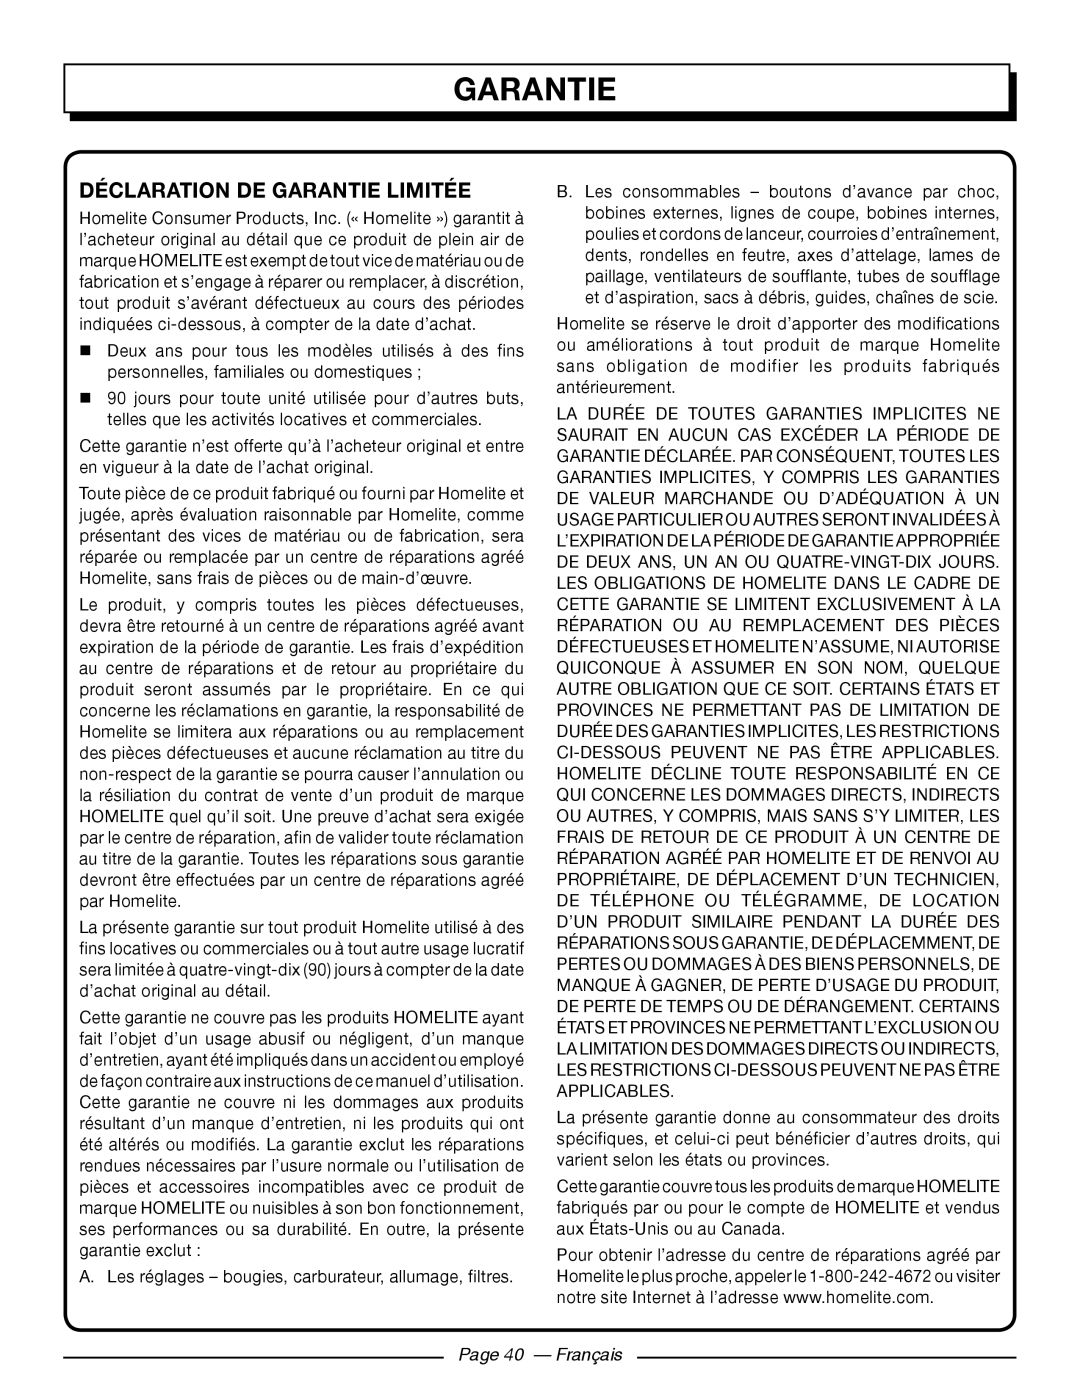 Homelite UT10584, UT10586, UT10564, UT10544, UT10546, UT10566 Déclaration De Garantie Limitée, Page 40 - Français 